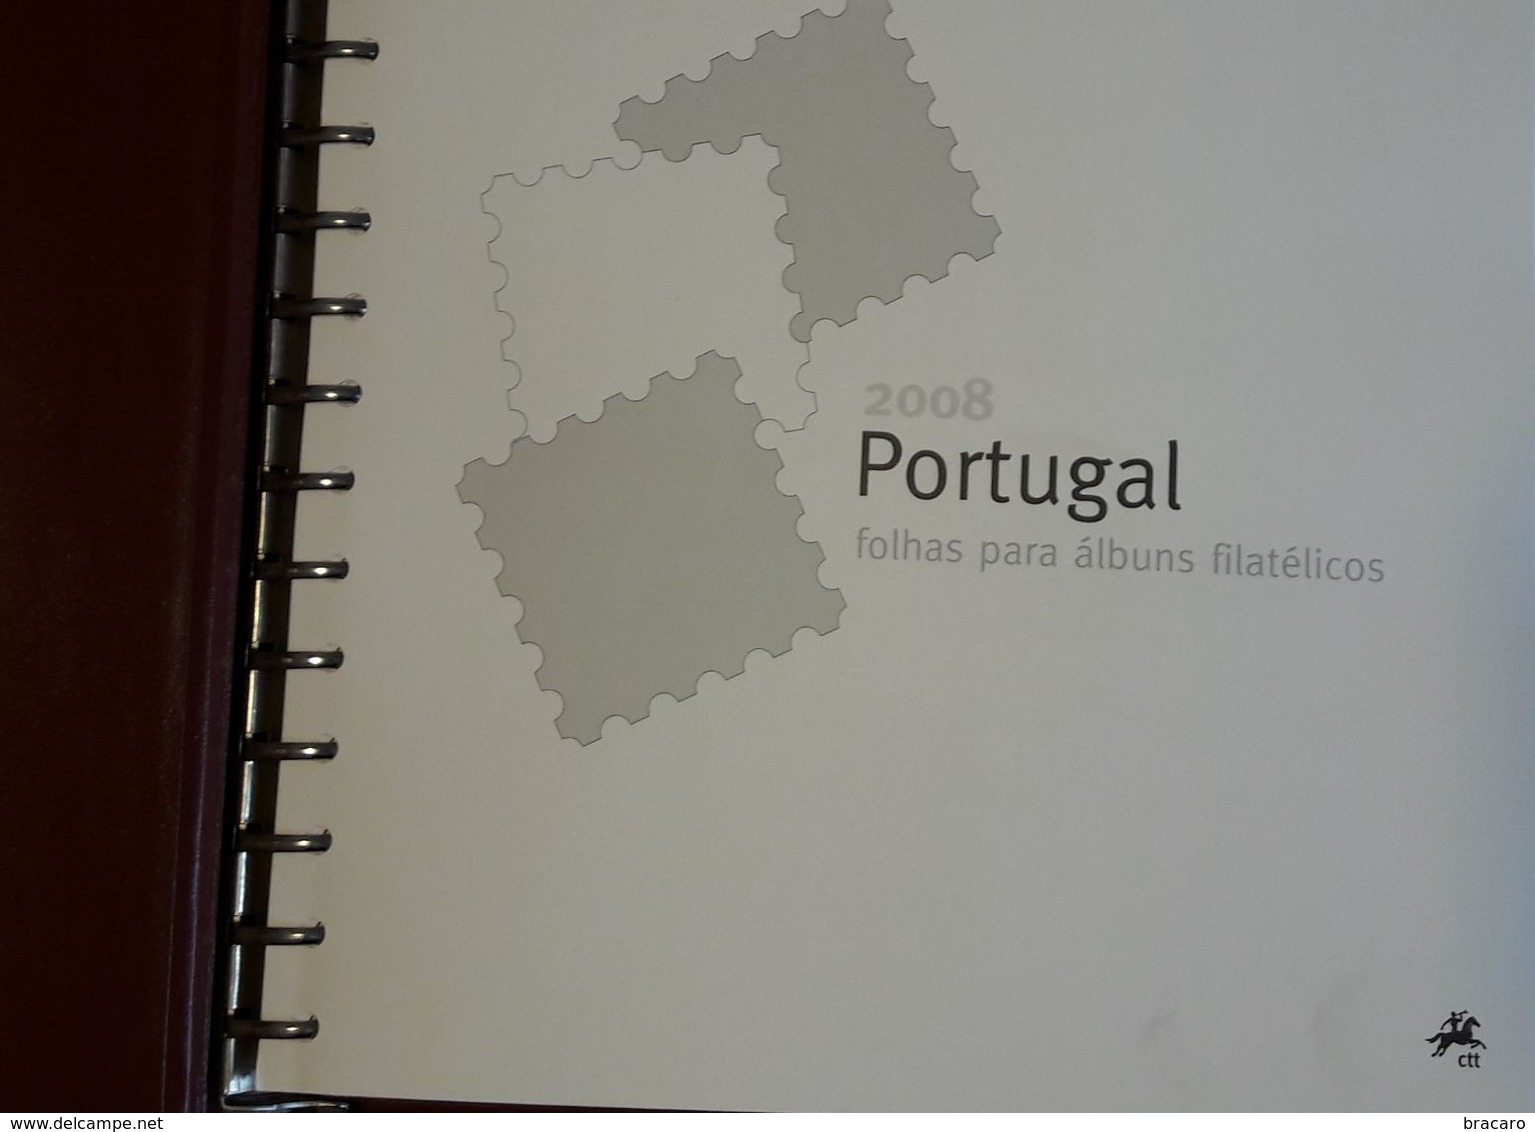 PORTUGAL - ÁLBUM FILATÉLICO - Full Year Stamps + Blocks + ATM / Machine Stamps - MNH - 2008 - Buch Des Jahres